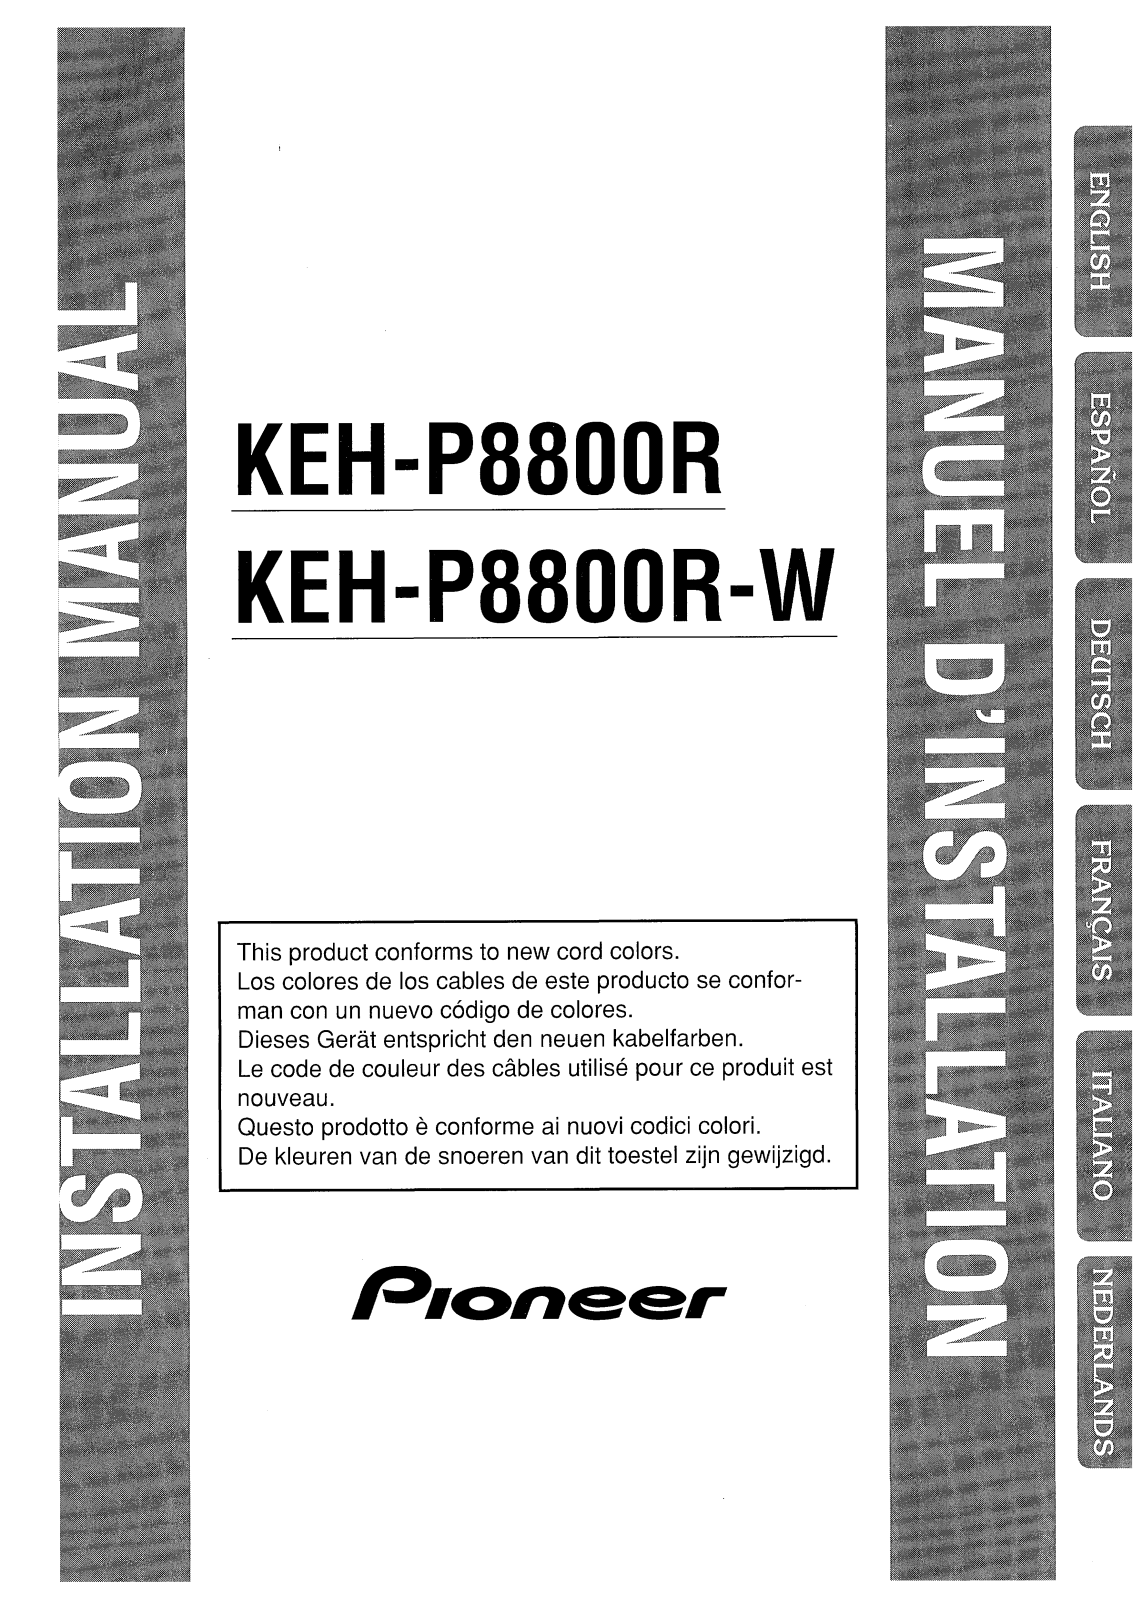 PIONEER KEH-P8800R(-W) User Manual